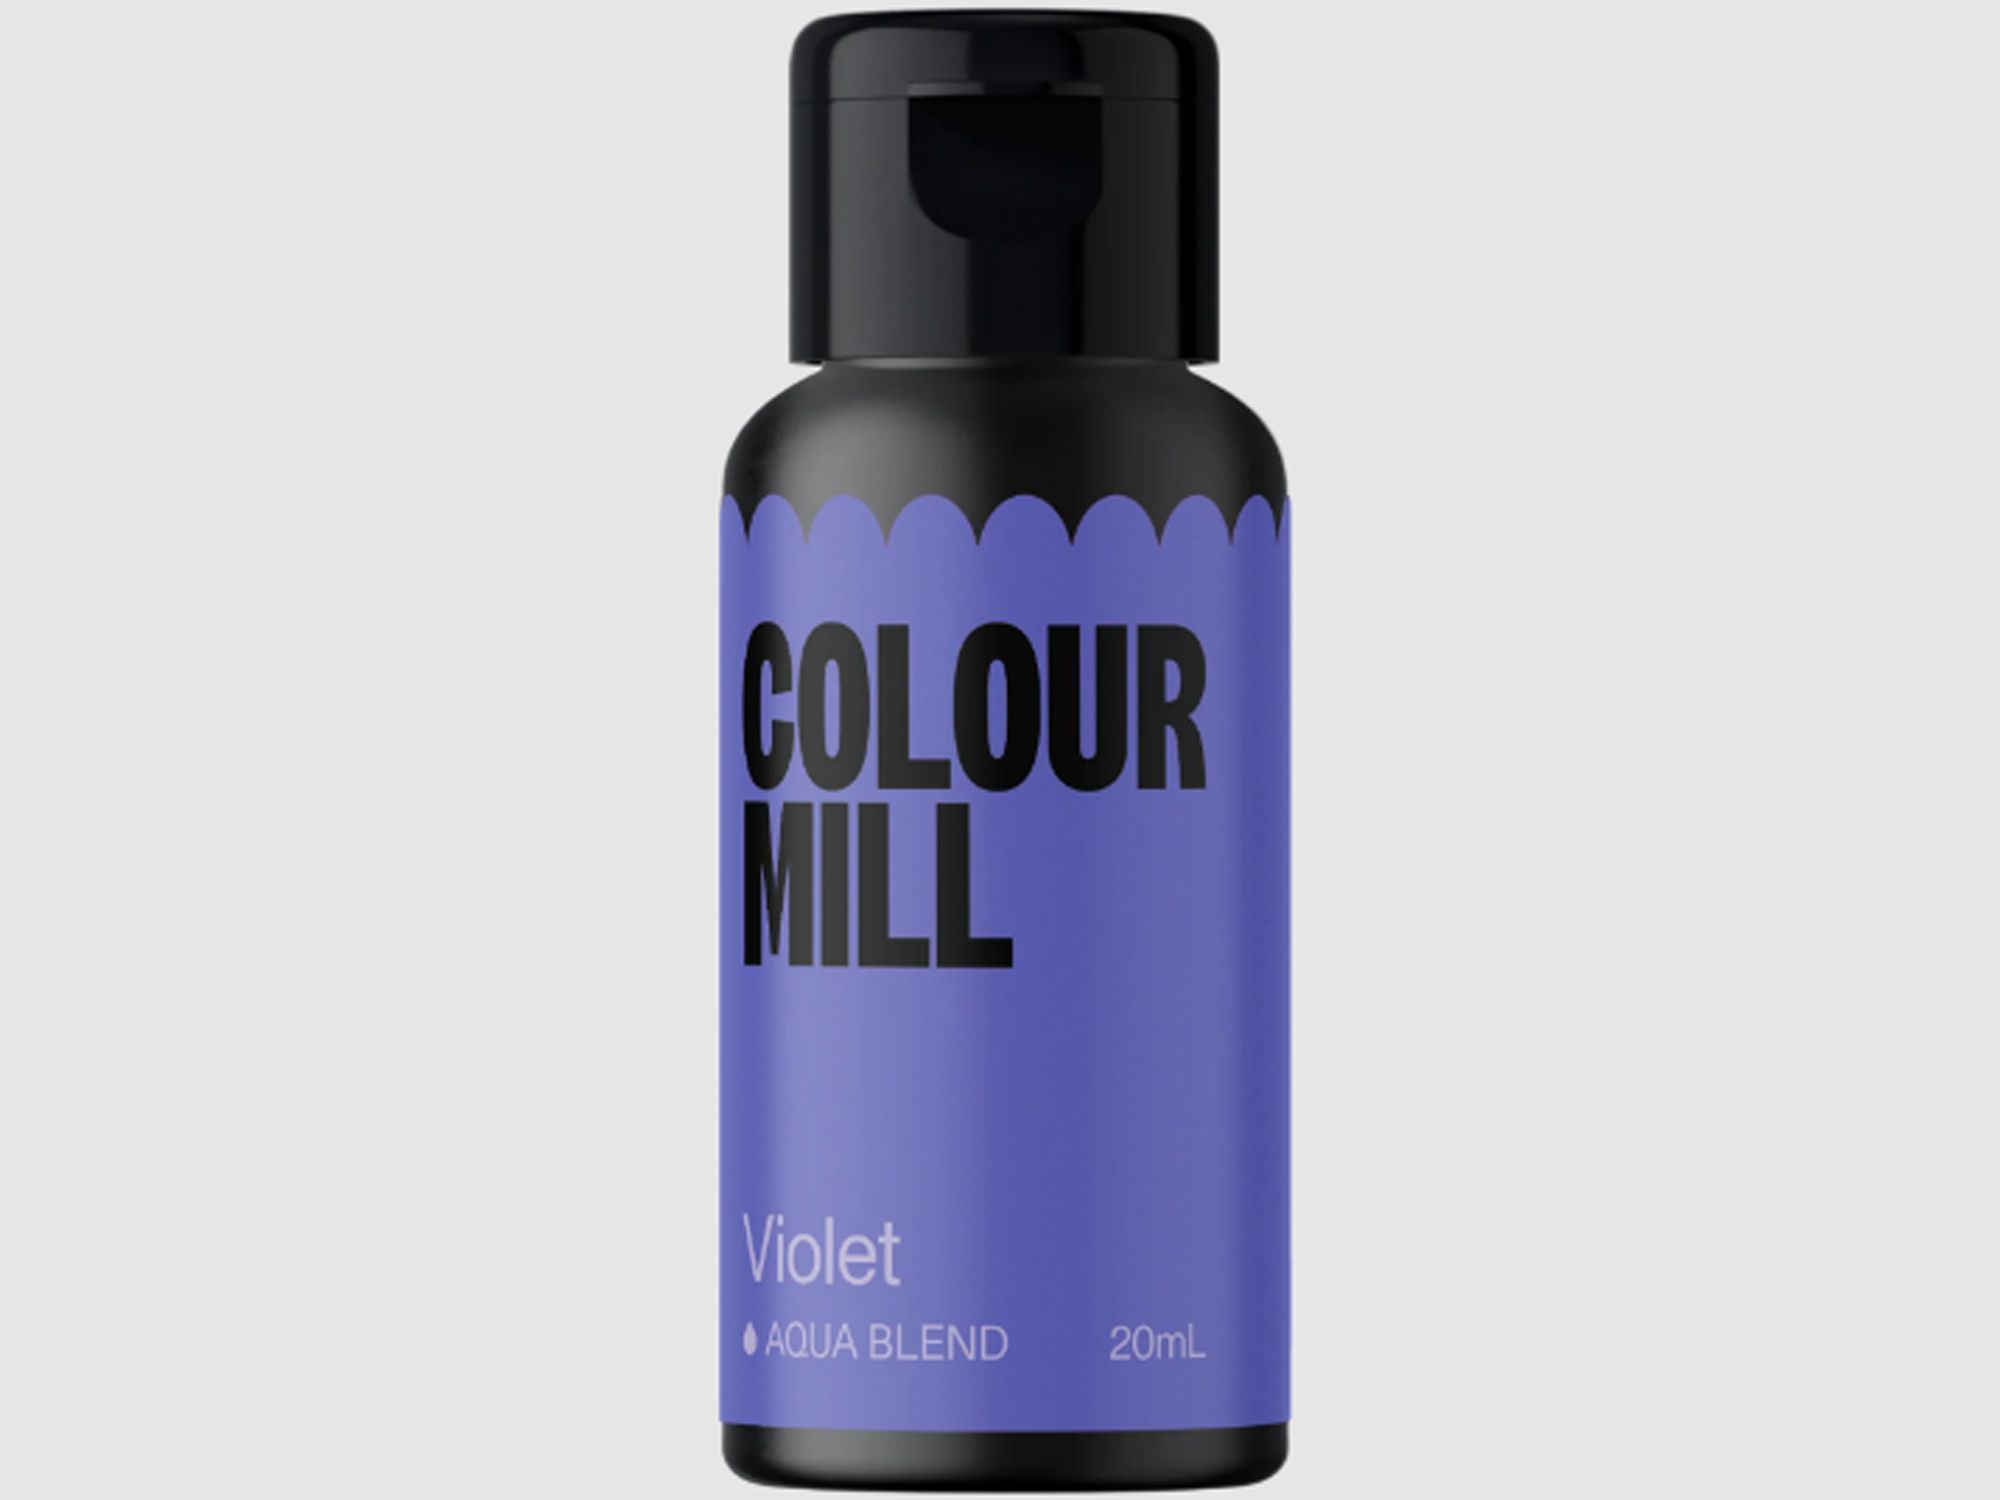 Colour Mill Violet (Aqua Blend) 20ml